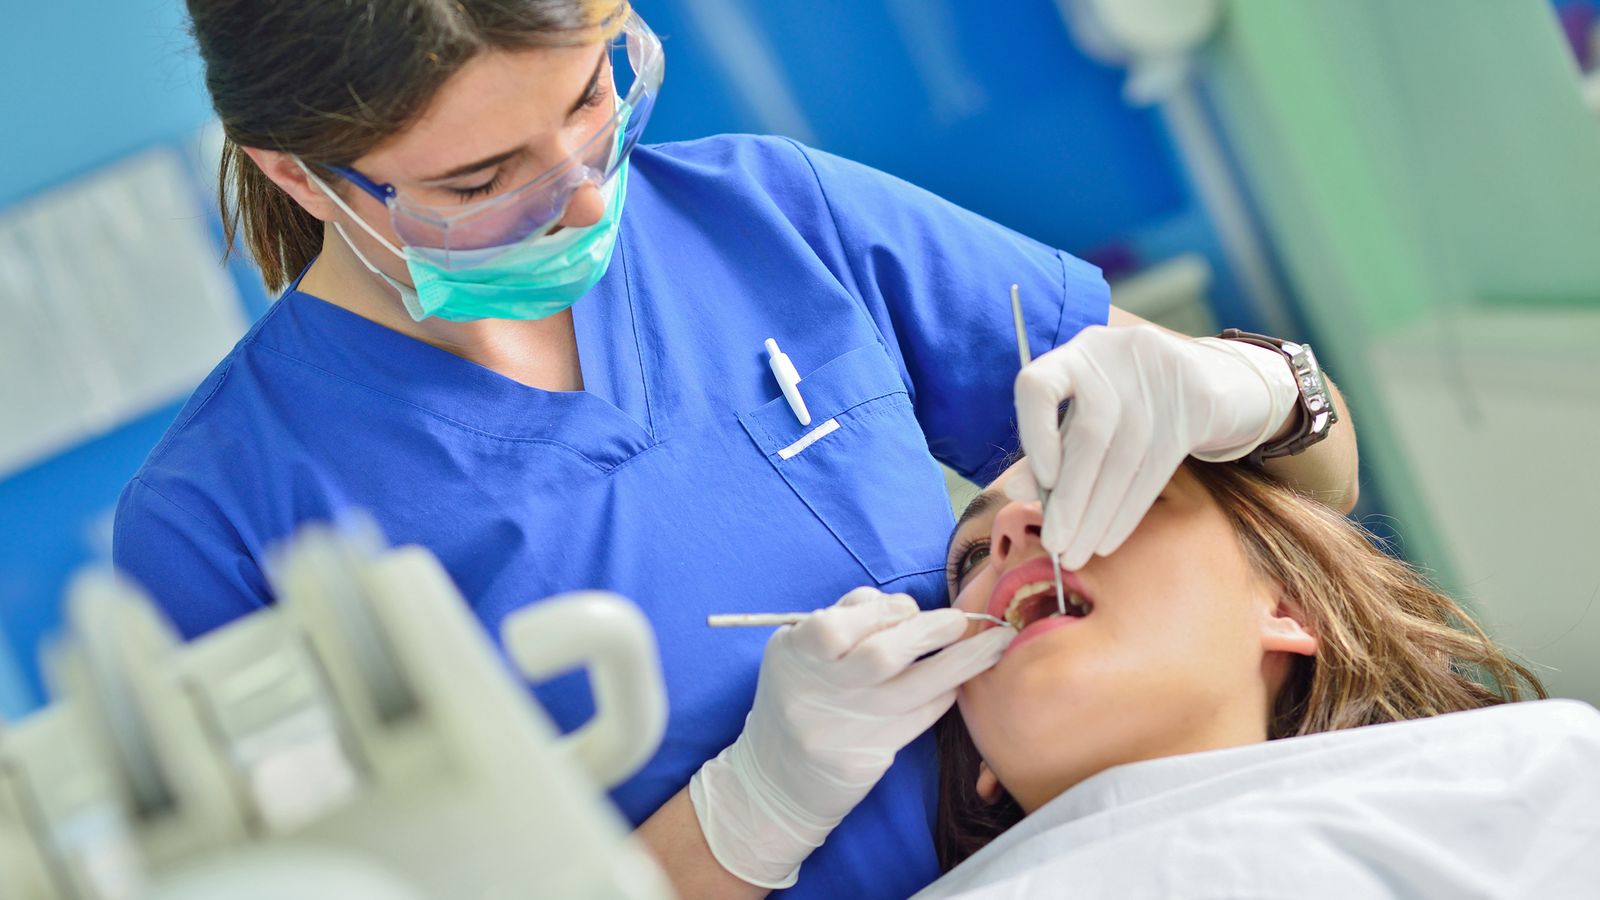 مهارت شنیداری زبان انگلیسی قرار با دندانپزشک (dentist appointment)